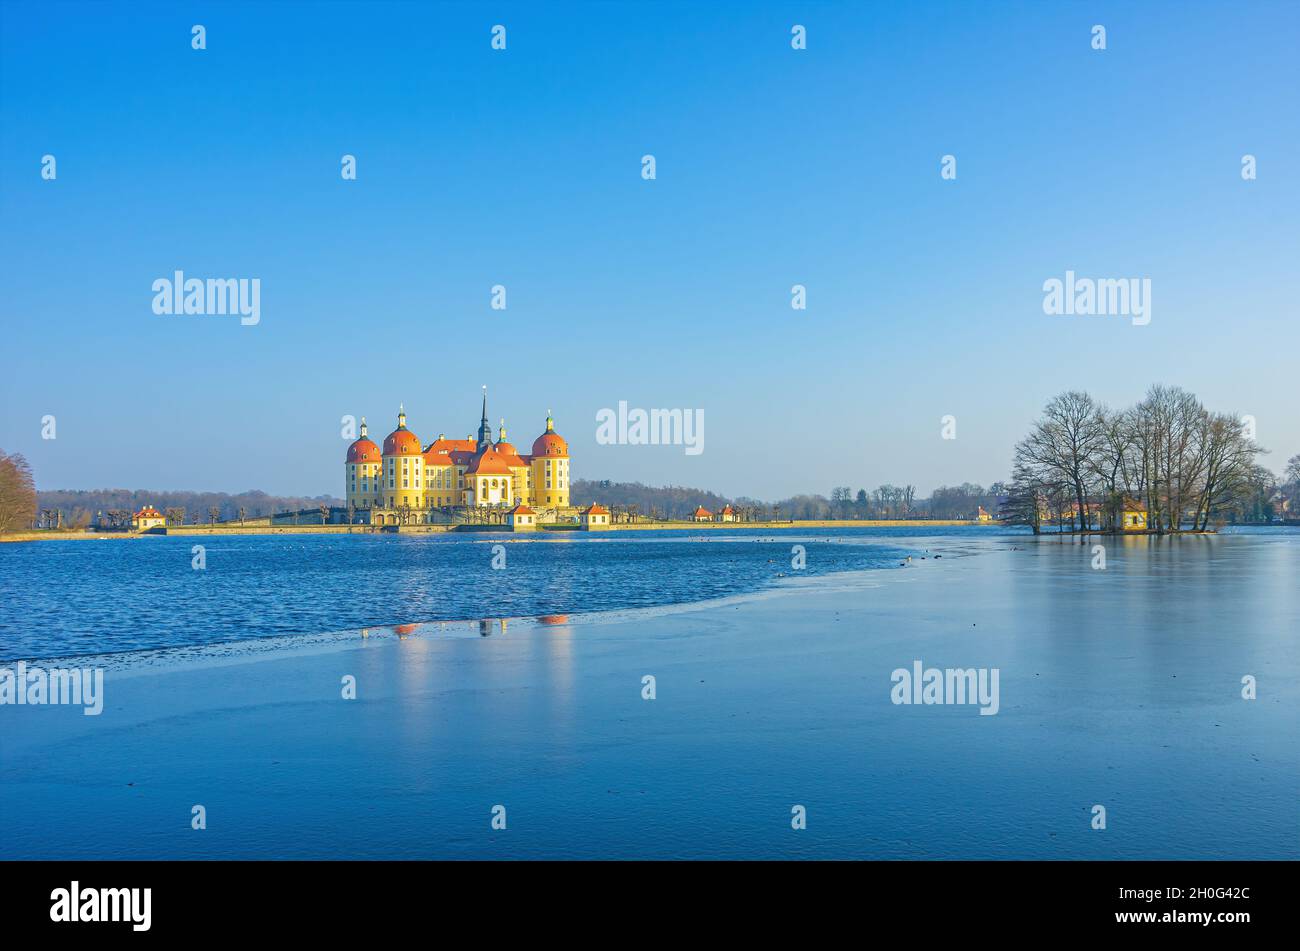 Moritzburg bei Dresden, Sachsen, Deutschland: Winterlich Schloss Moritzburg aus dem Nordwesten, umgeben vom teilweise gefrorenen Schlossteich. Stockfoto